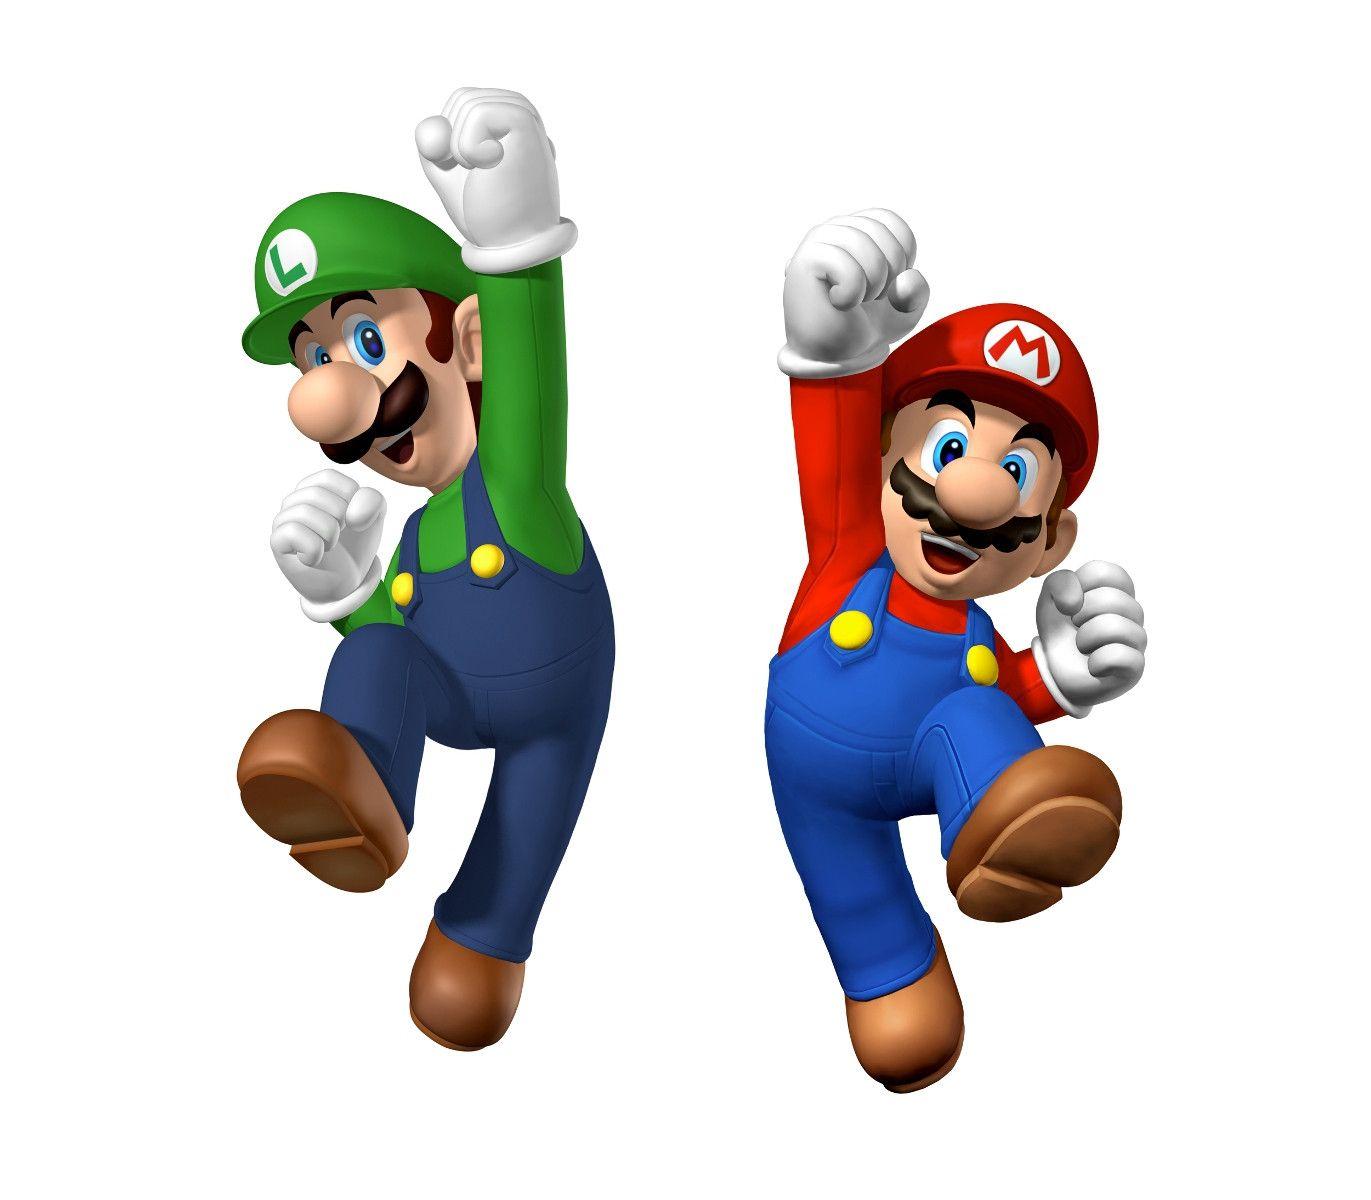 Mario And Luigi Wallpaper Free Download Cartoon Games of Mario